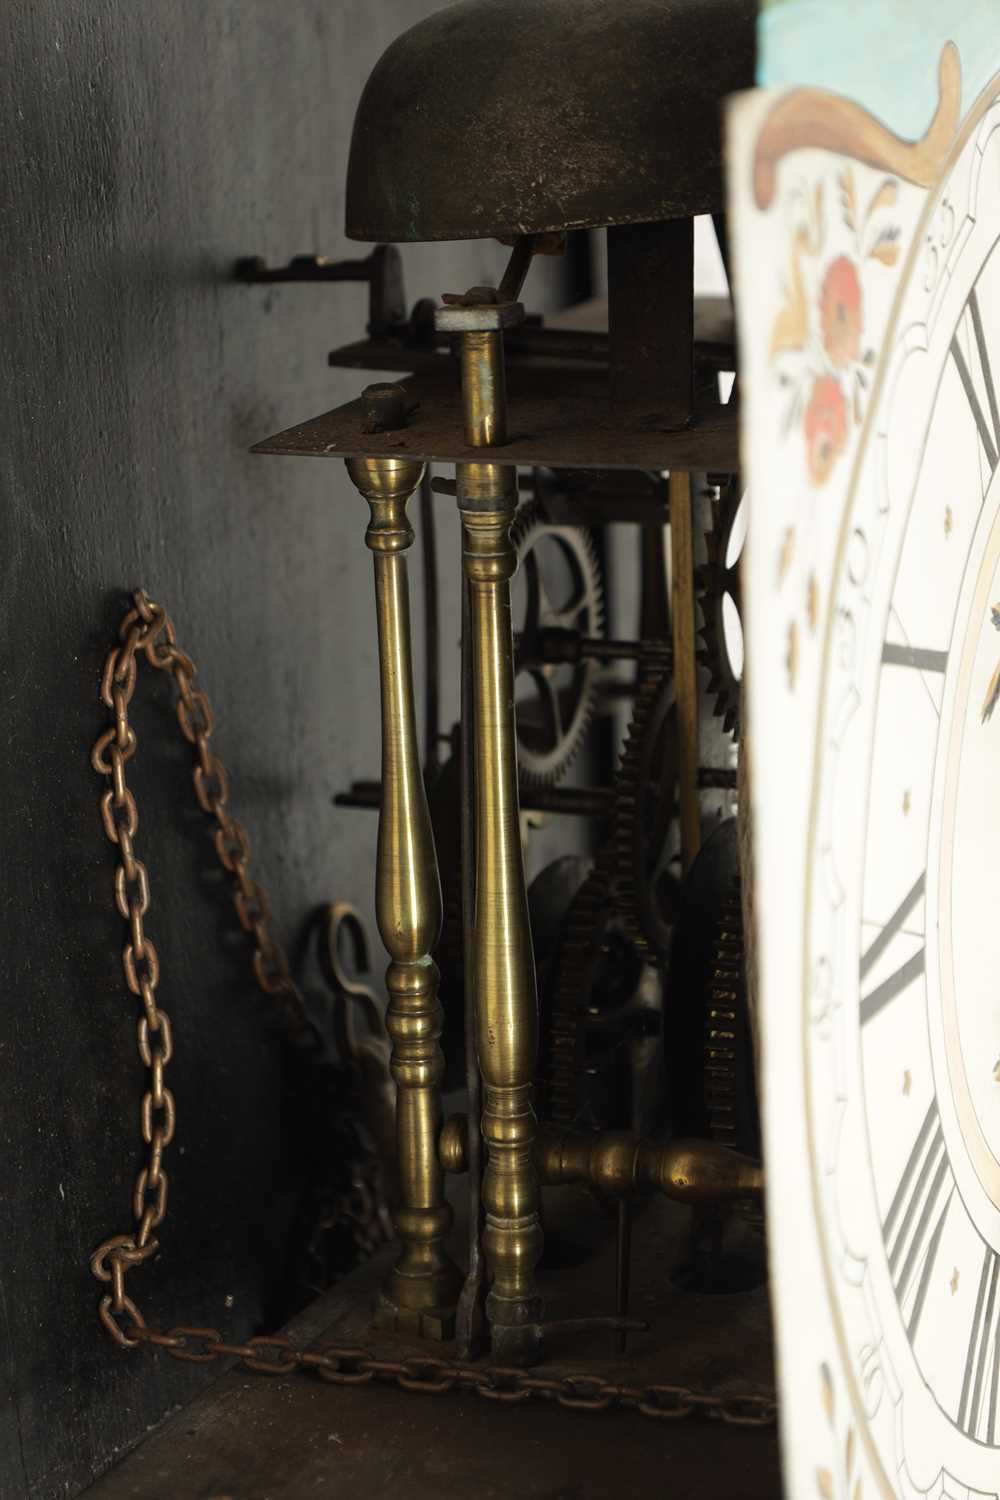 AN 18TH CENTURY DUTCH WALL CLOCK